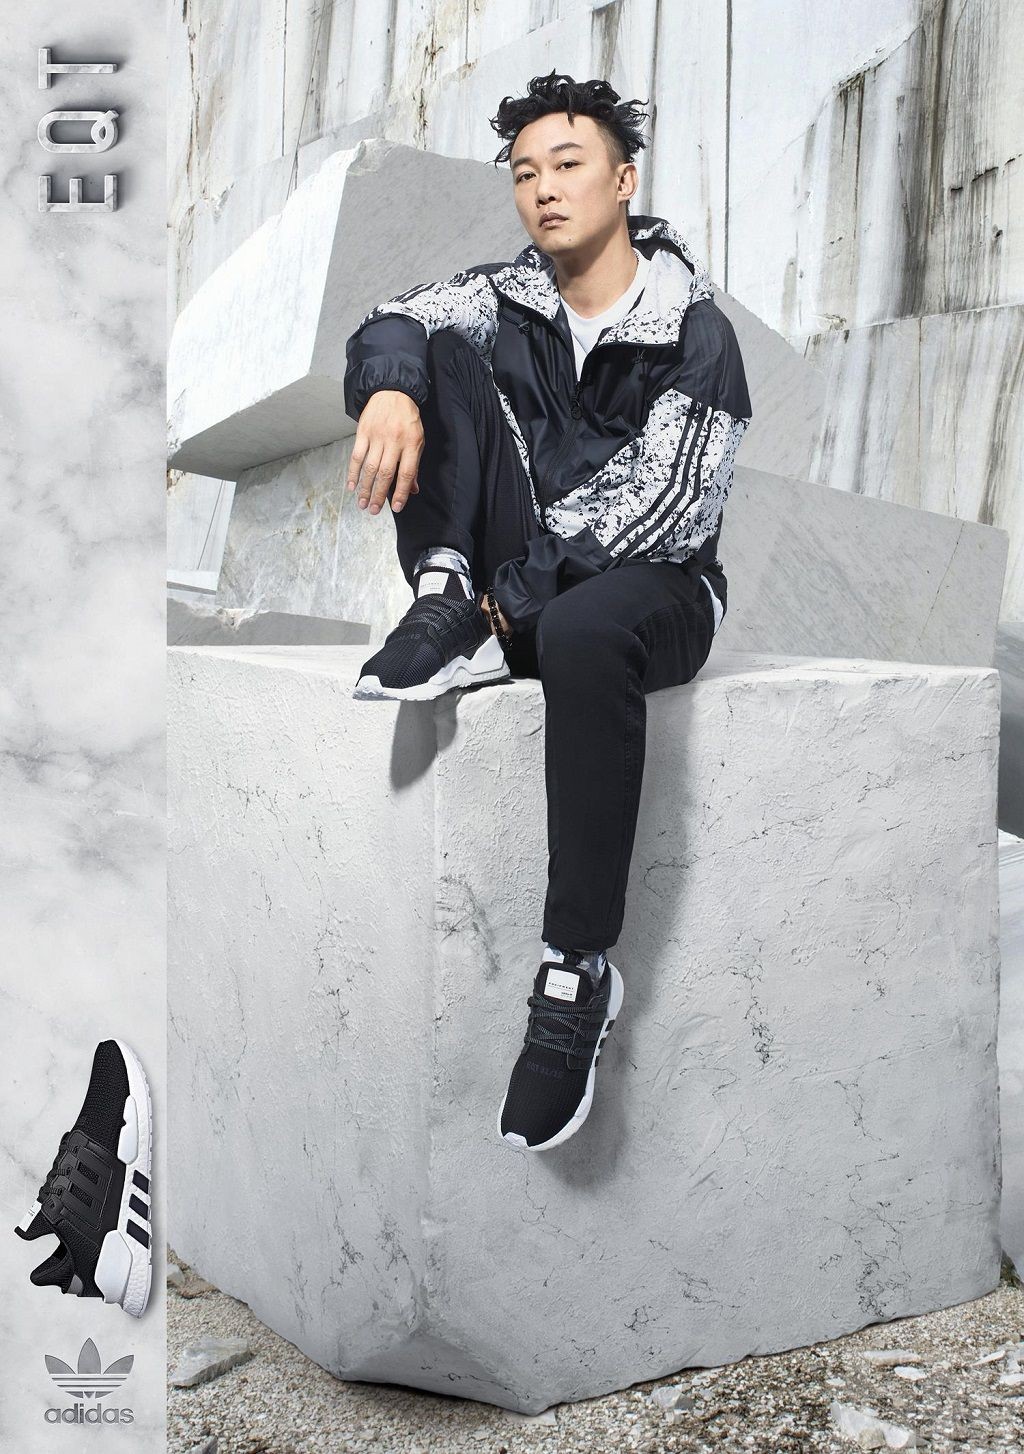 陳奕迅發聲明與Adidas終止合作